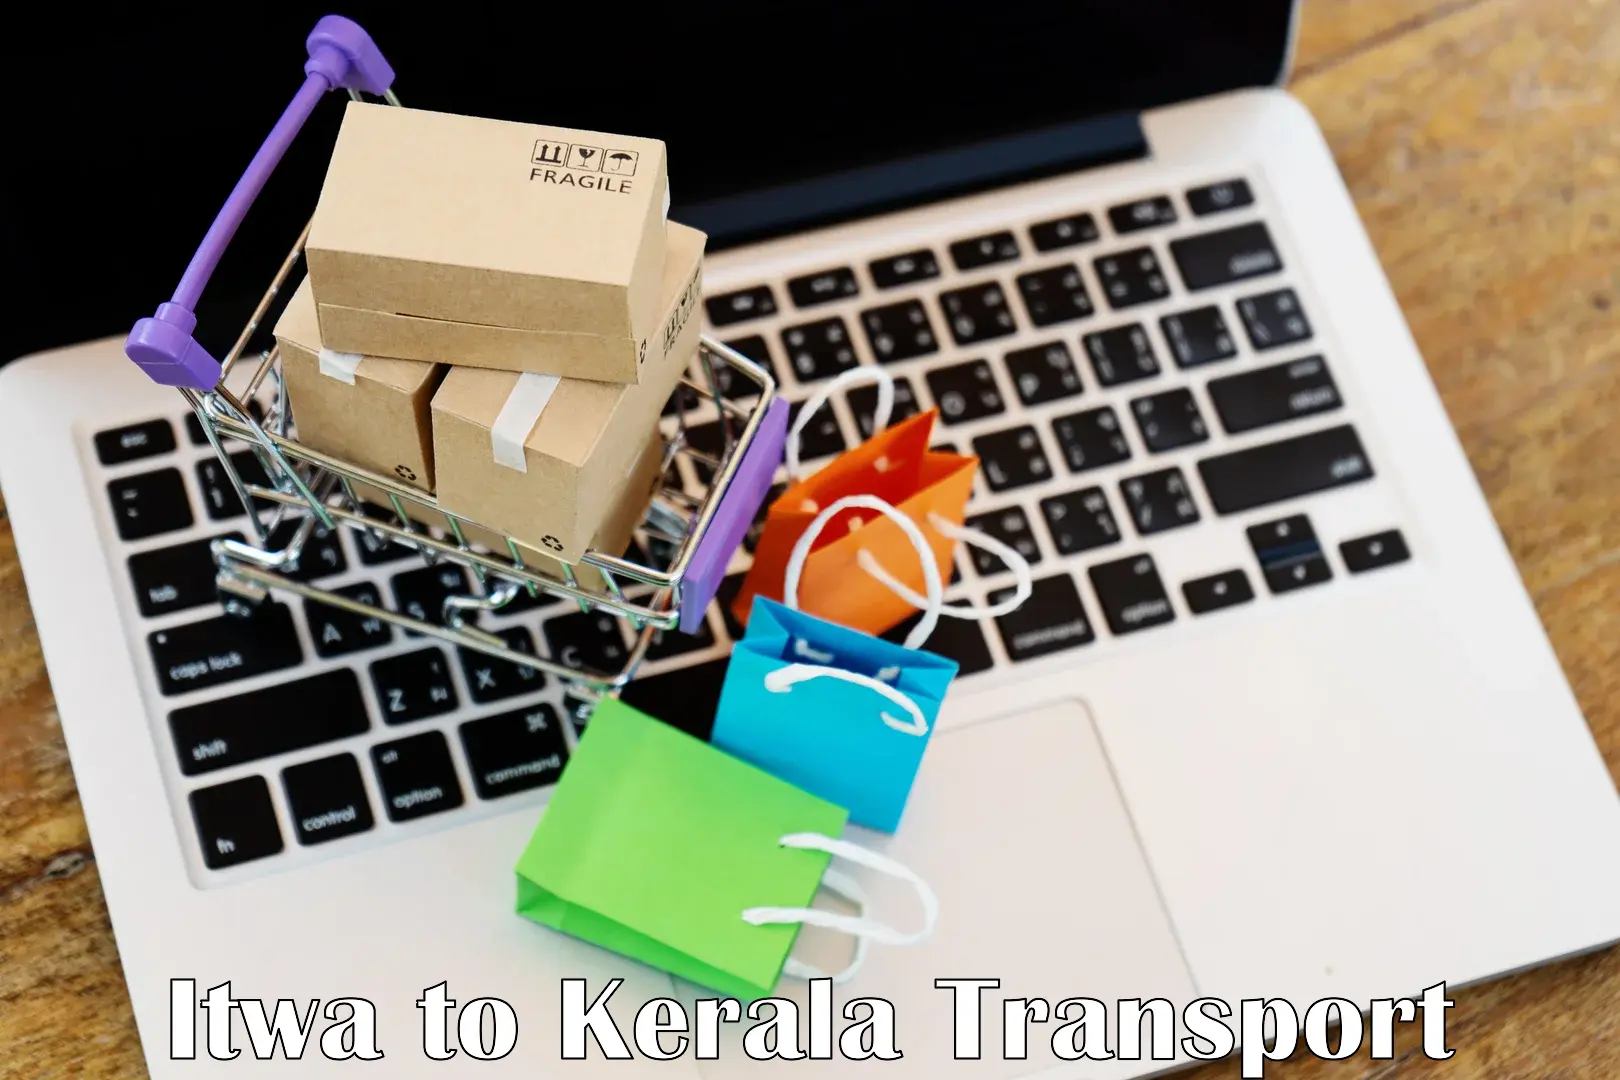 Daily transport service Itwa to Kayamkulam